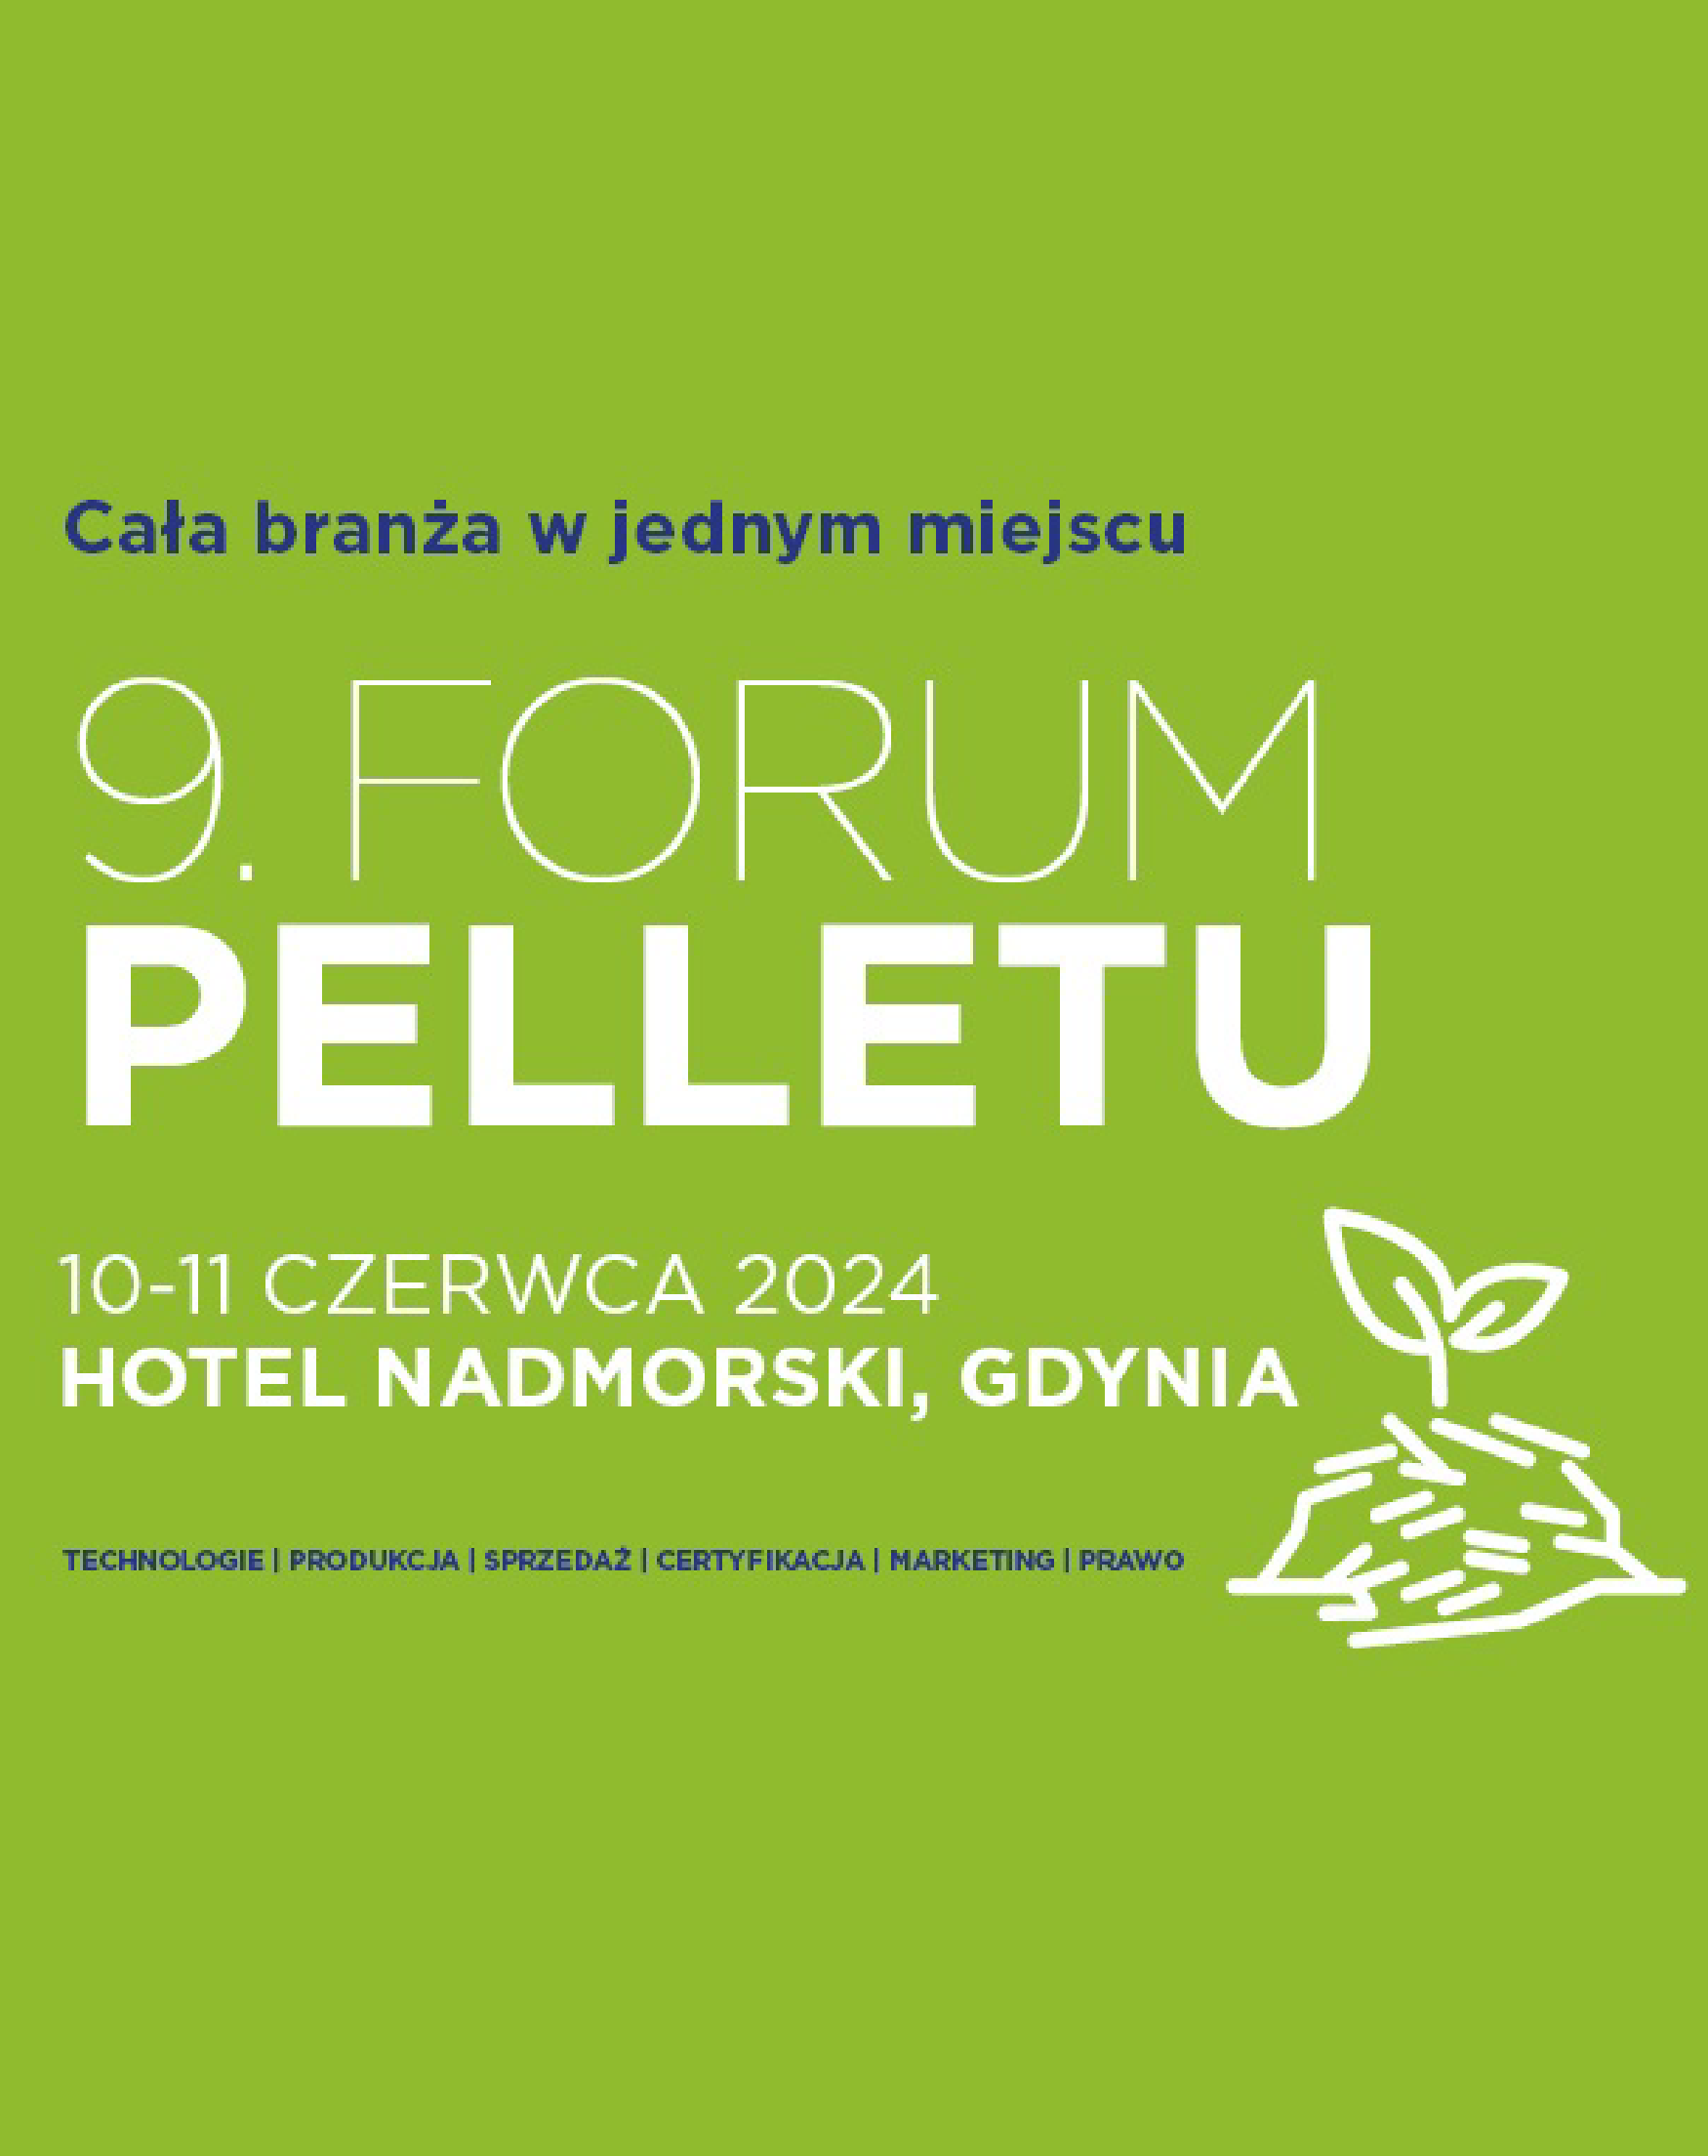 9º Pellet Forum